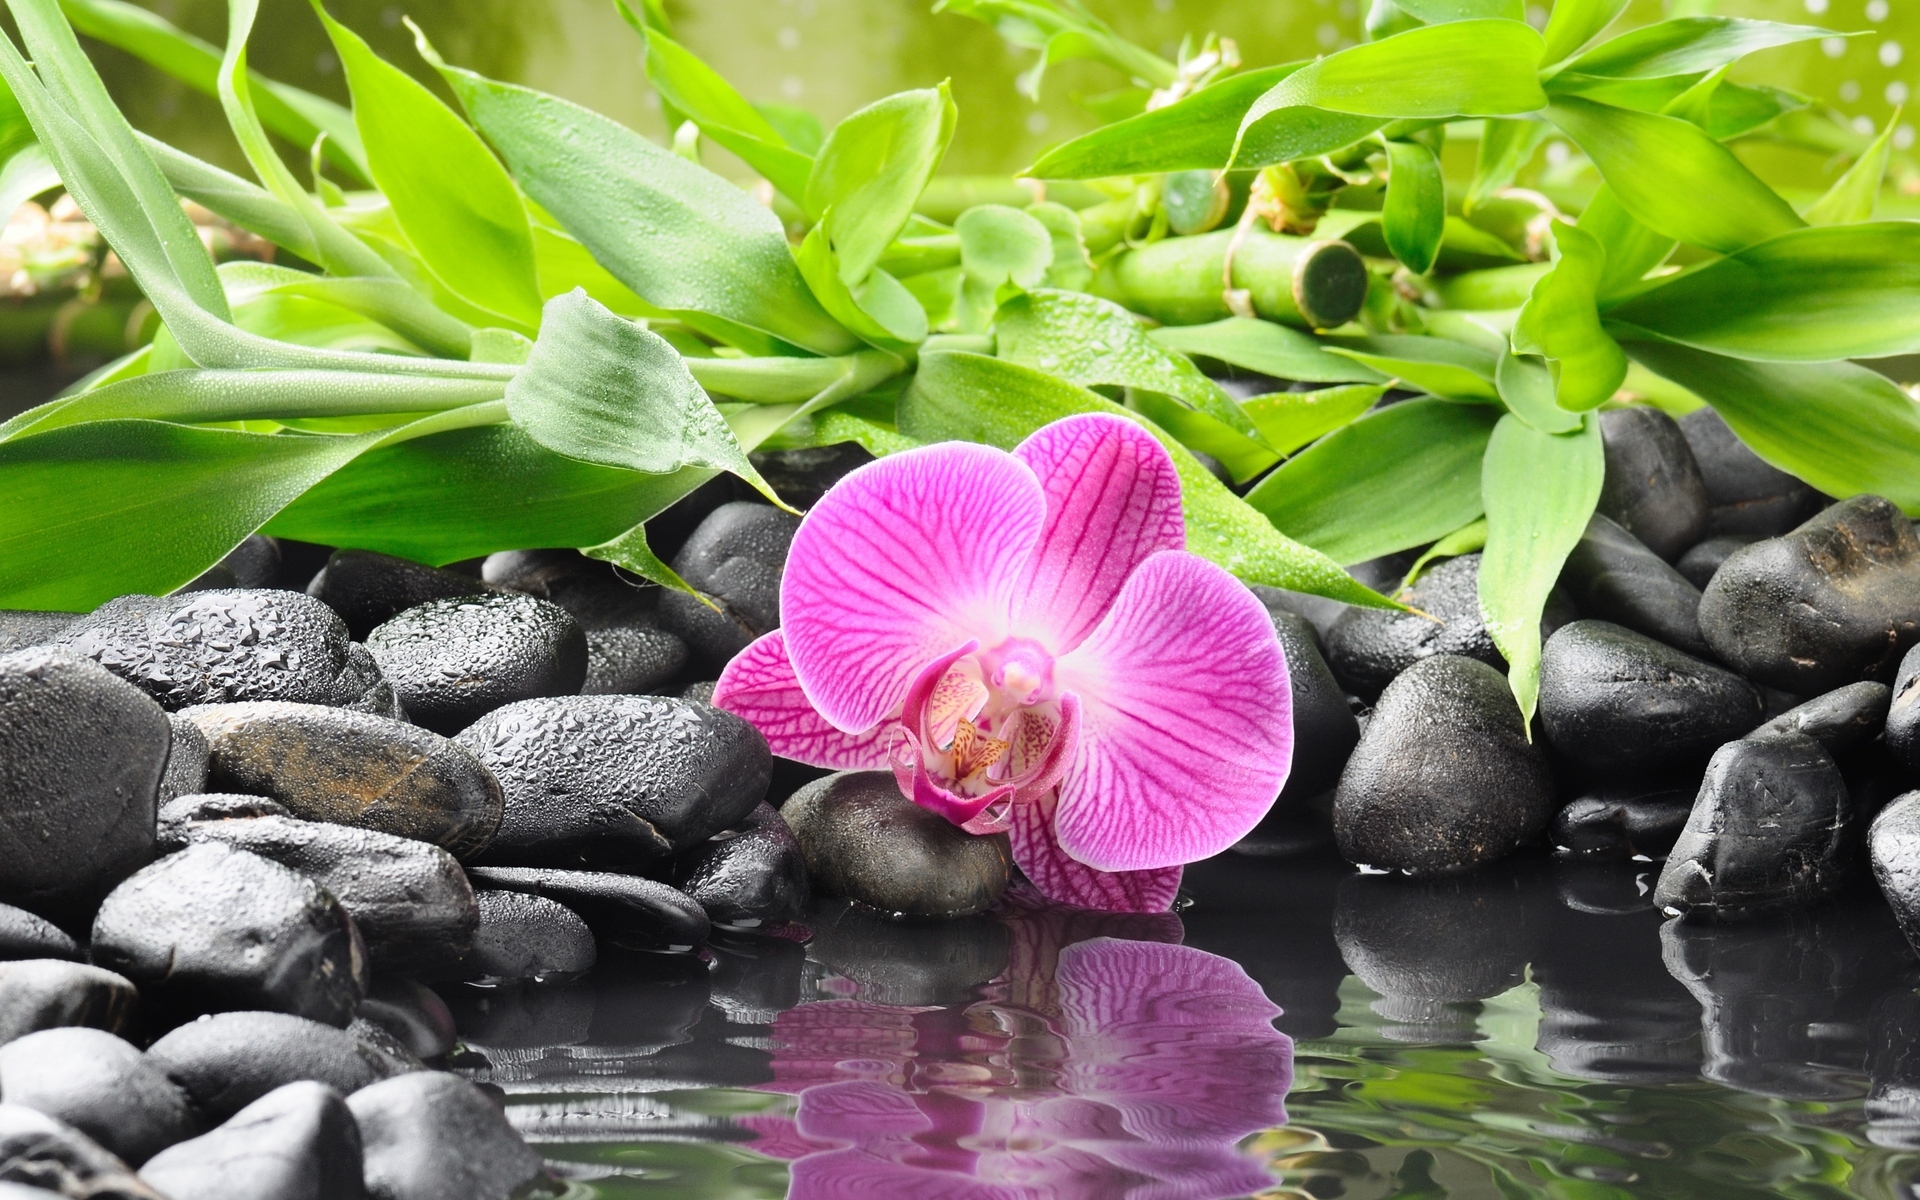 Цветок орхидеи